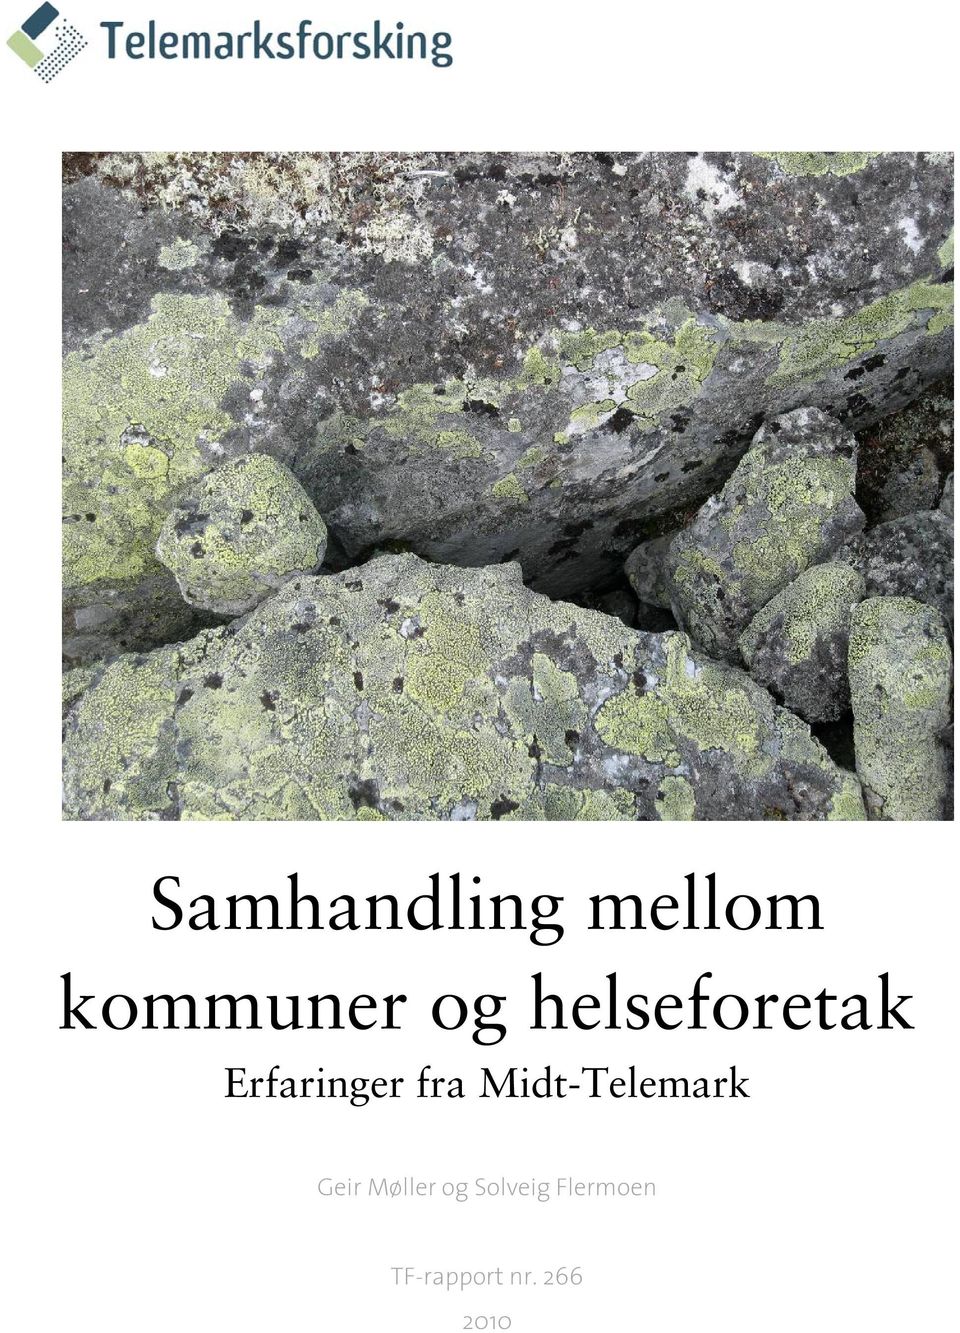 Midt-Telemark Geir Møller og